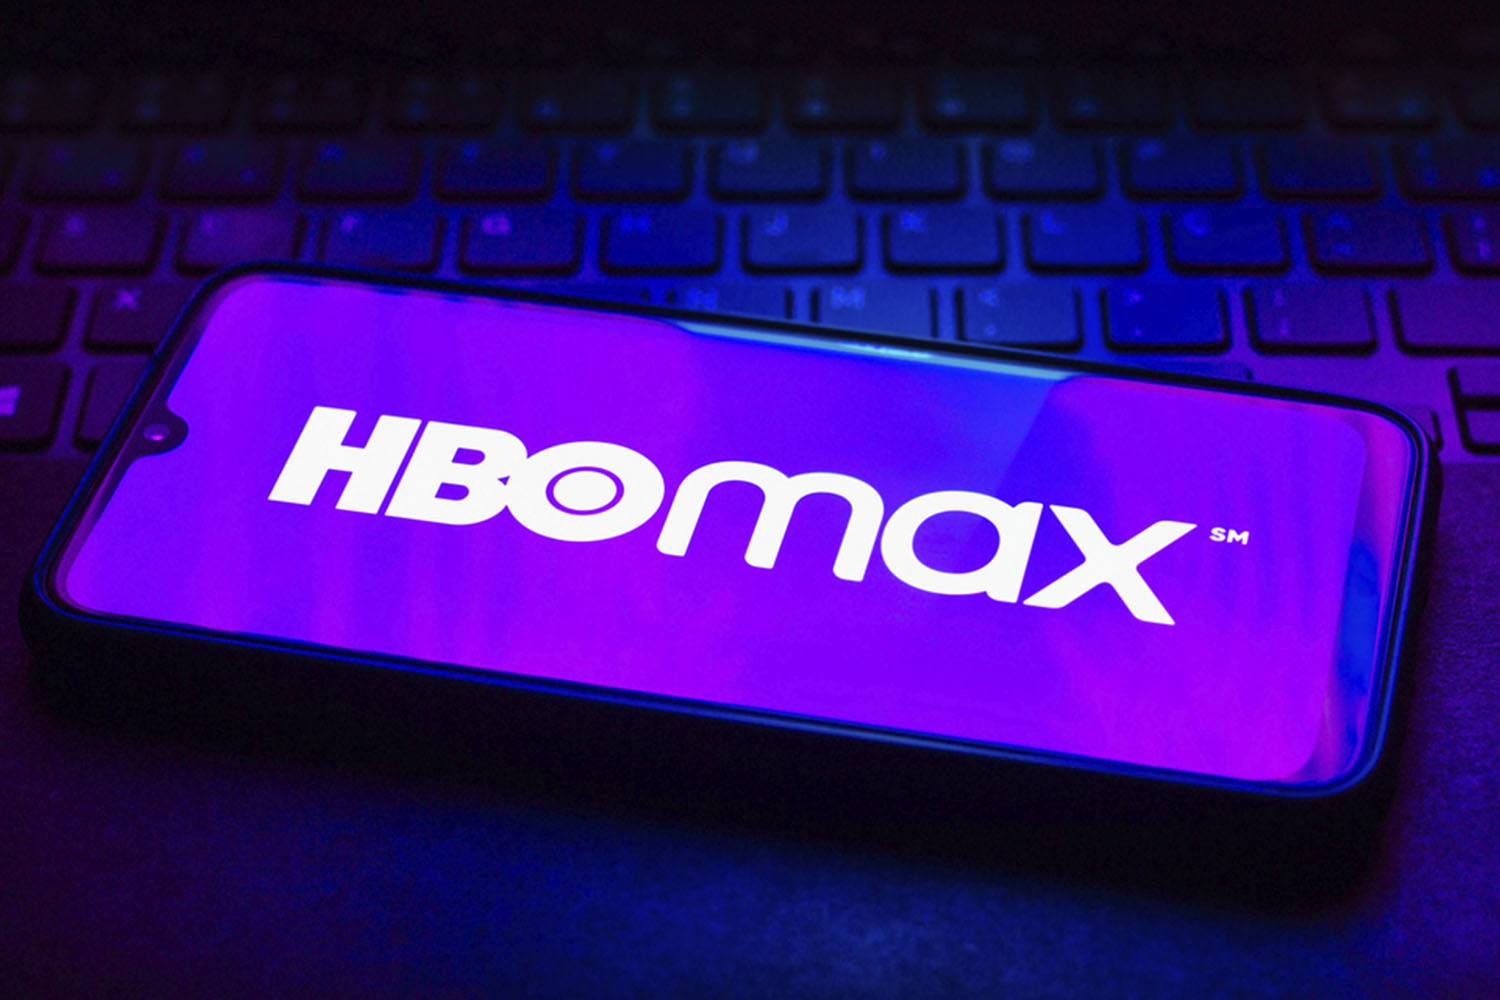 HBO Max aumenta valor de assinatura no Brasil: veja os novos